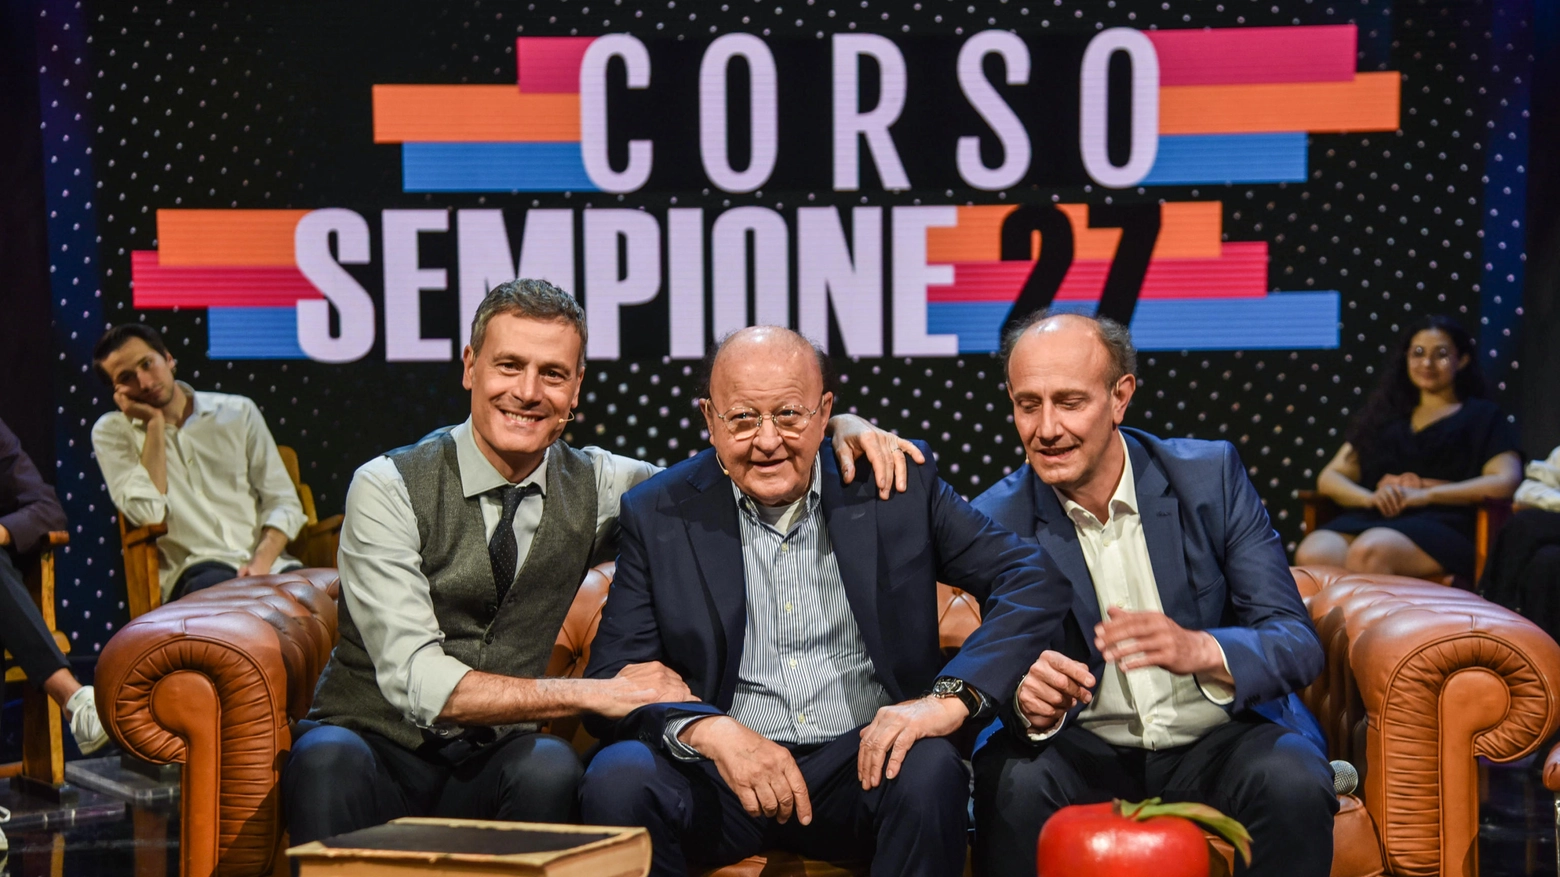 Ale & Franz insieme a Massimo Boldi per "Corso Sempione 27"